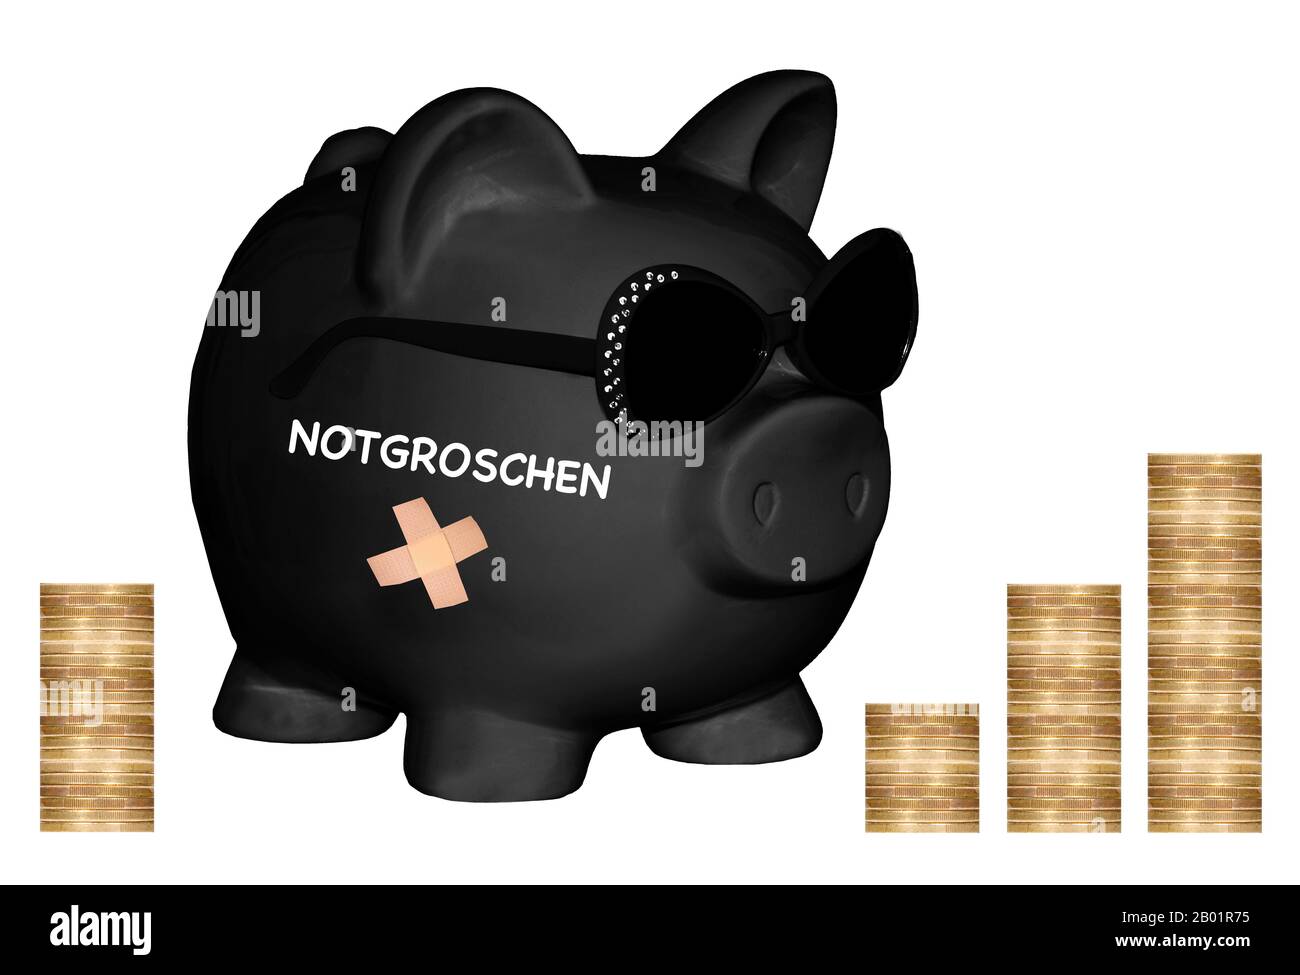 , salvadanaio nero con occhiali da sole e scritte Notgroschen, nido uovo, pile di monete in background, composizione Foto Stock